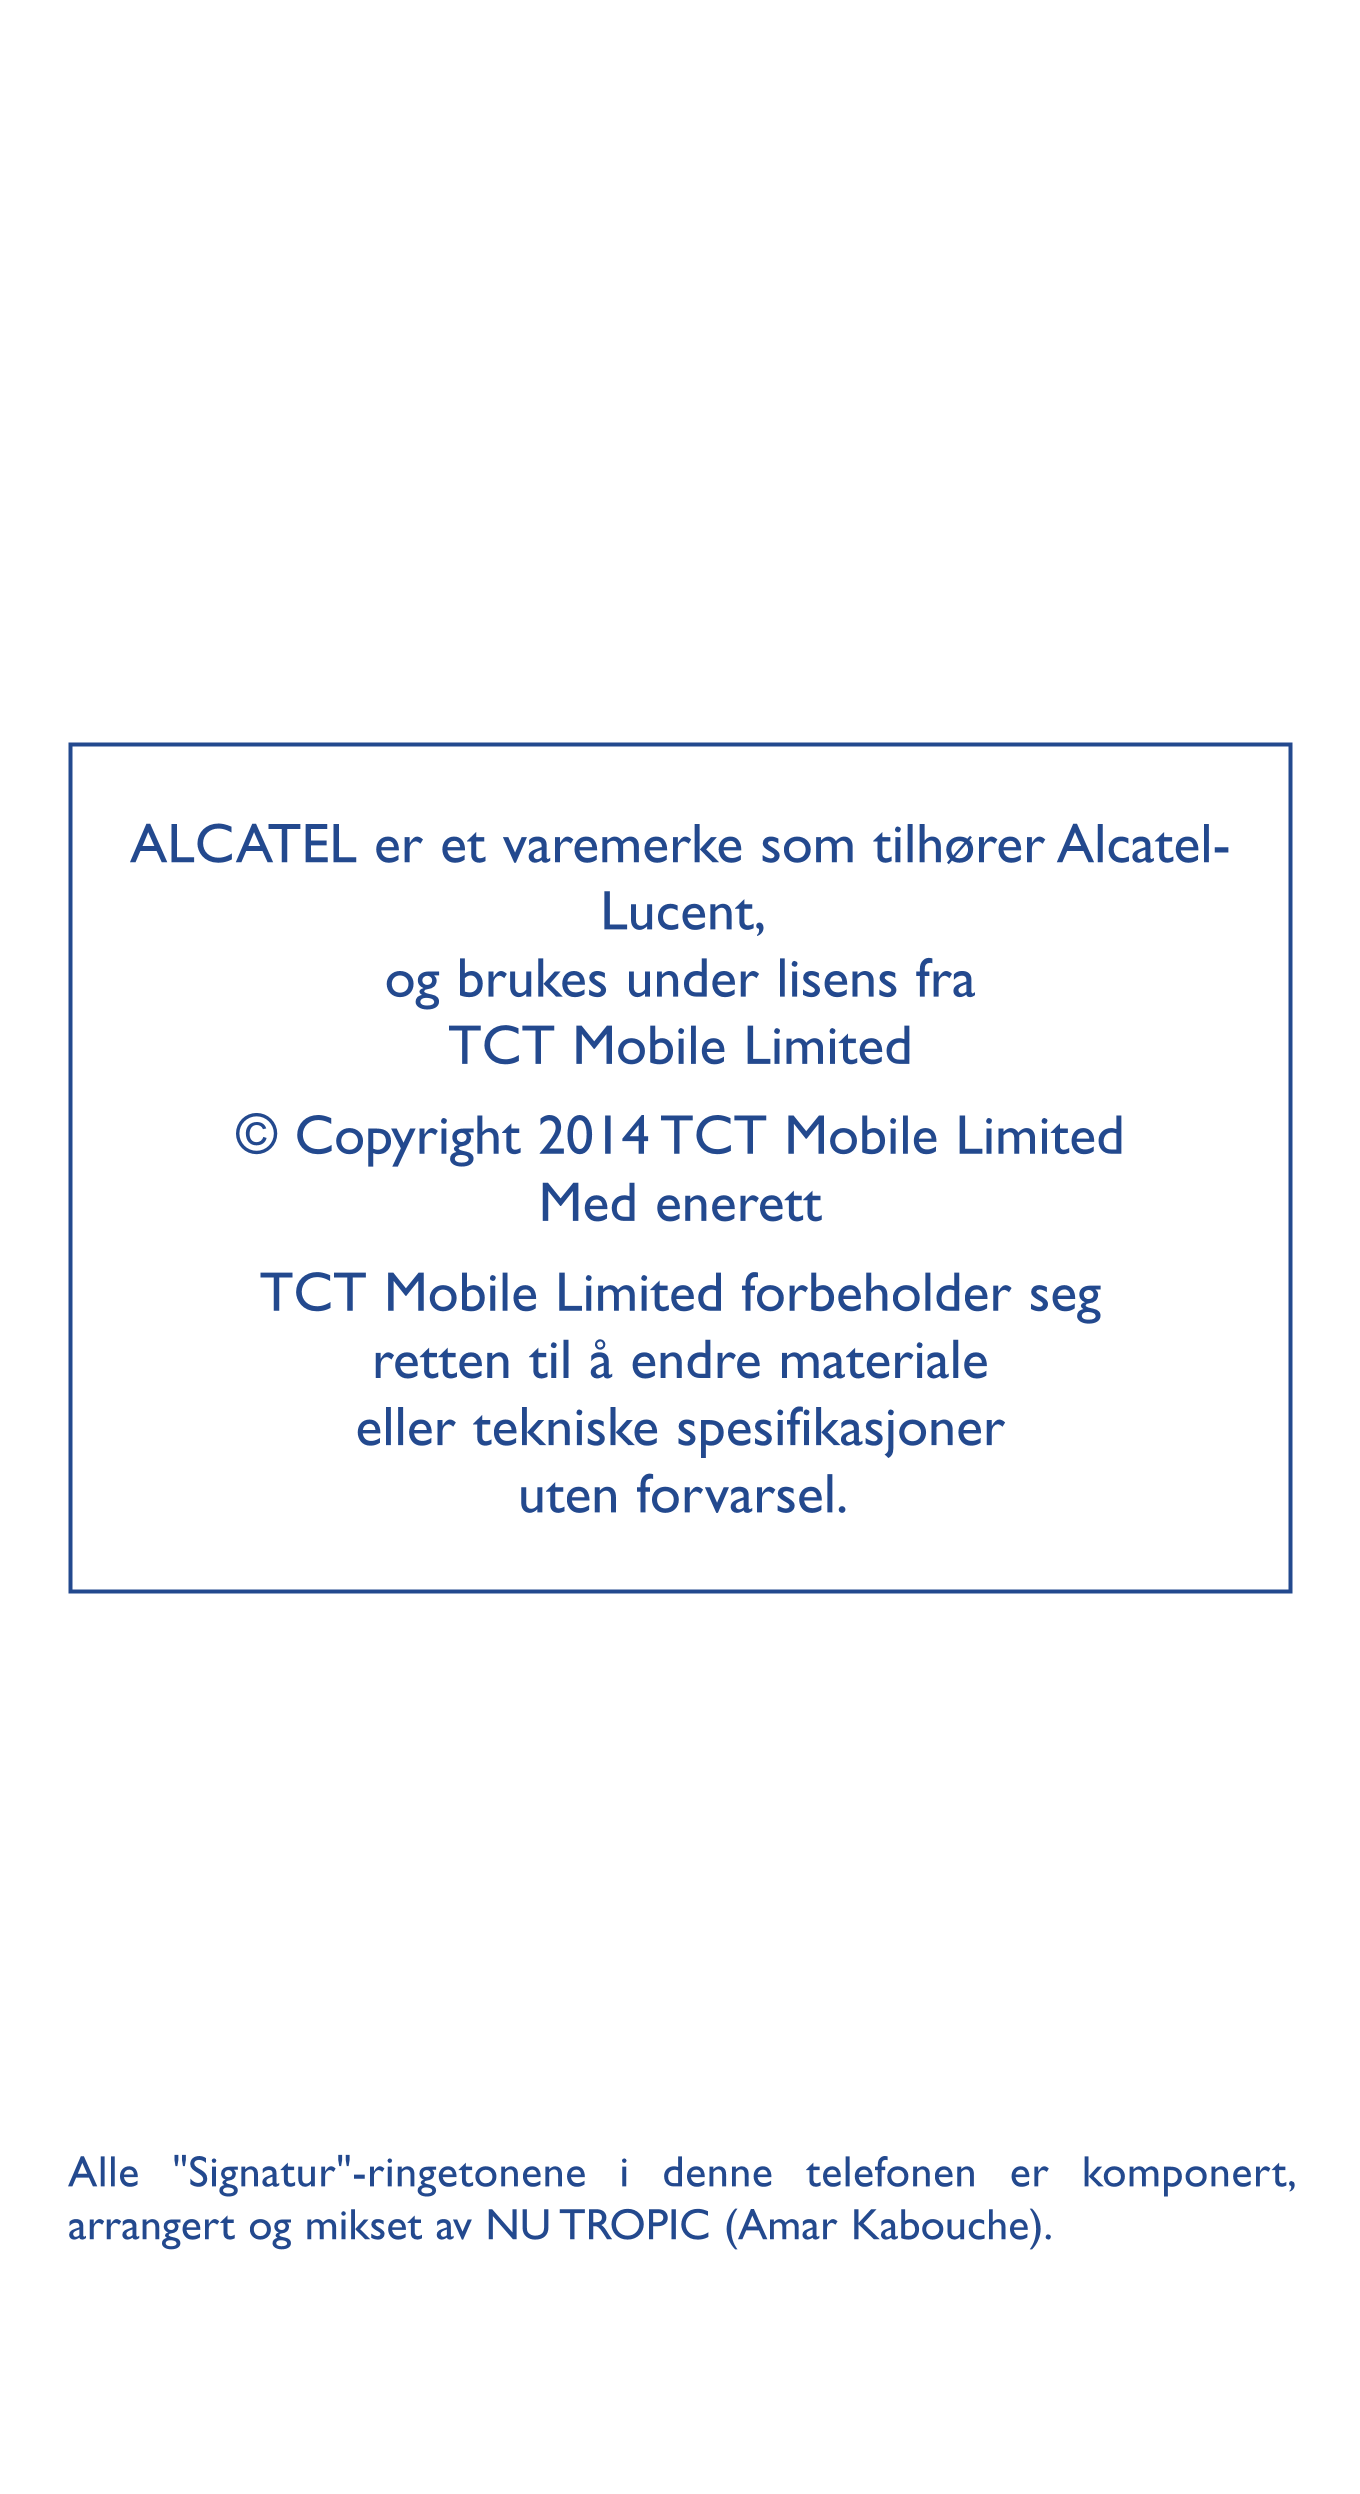 ALCATEL er et varemerke som tilhører Alcatel-
Lucent, 
og brukes under lisens fra   
TCT Mobile Limited
© Copyright 2014 TCT Mob